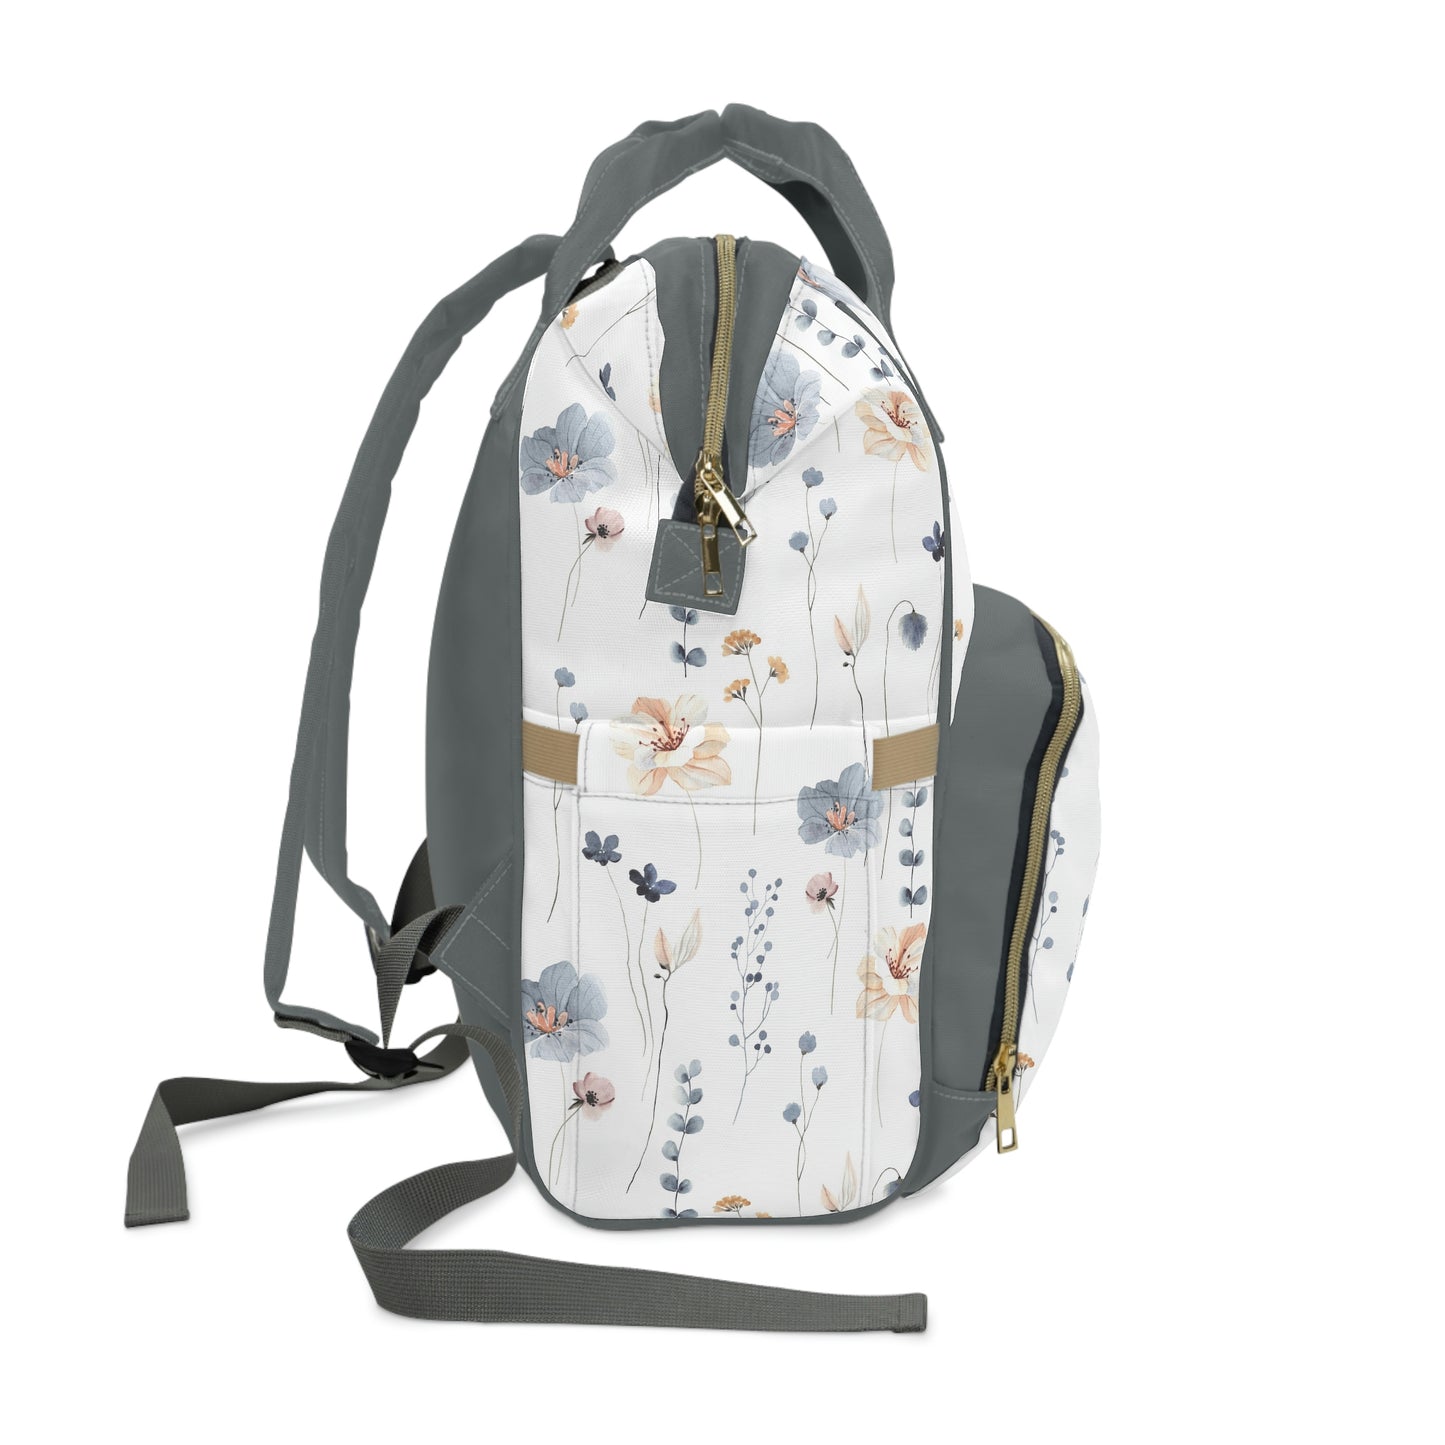 KLYKI Co. Floral Multifunctional Diaper Backpack